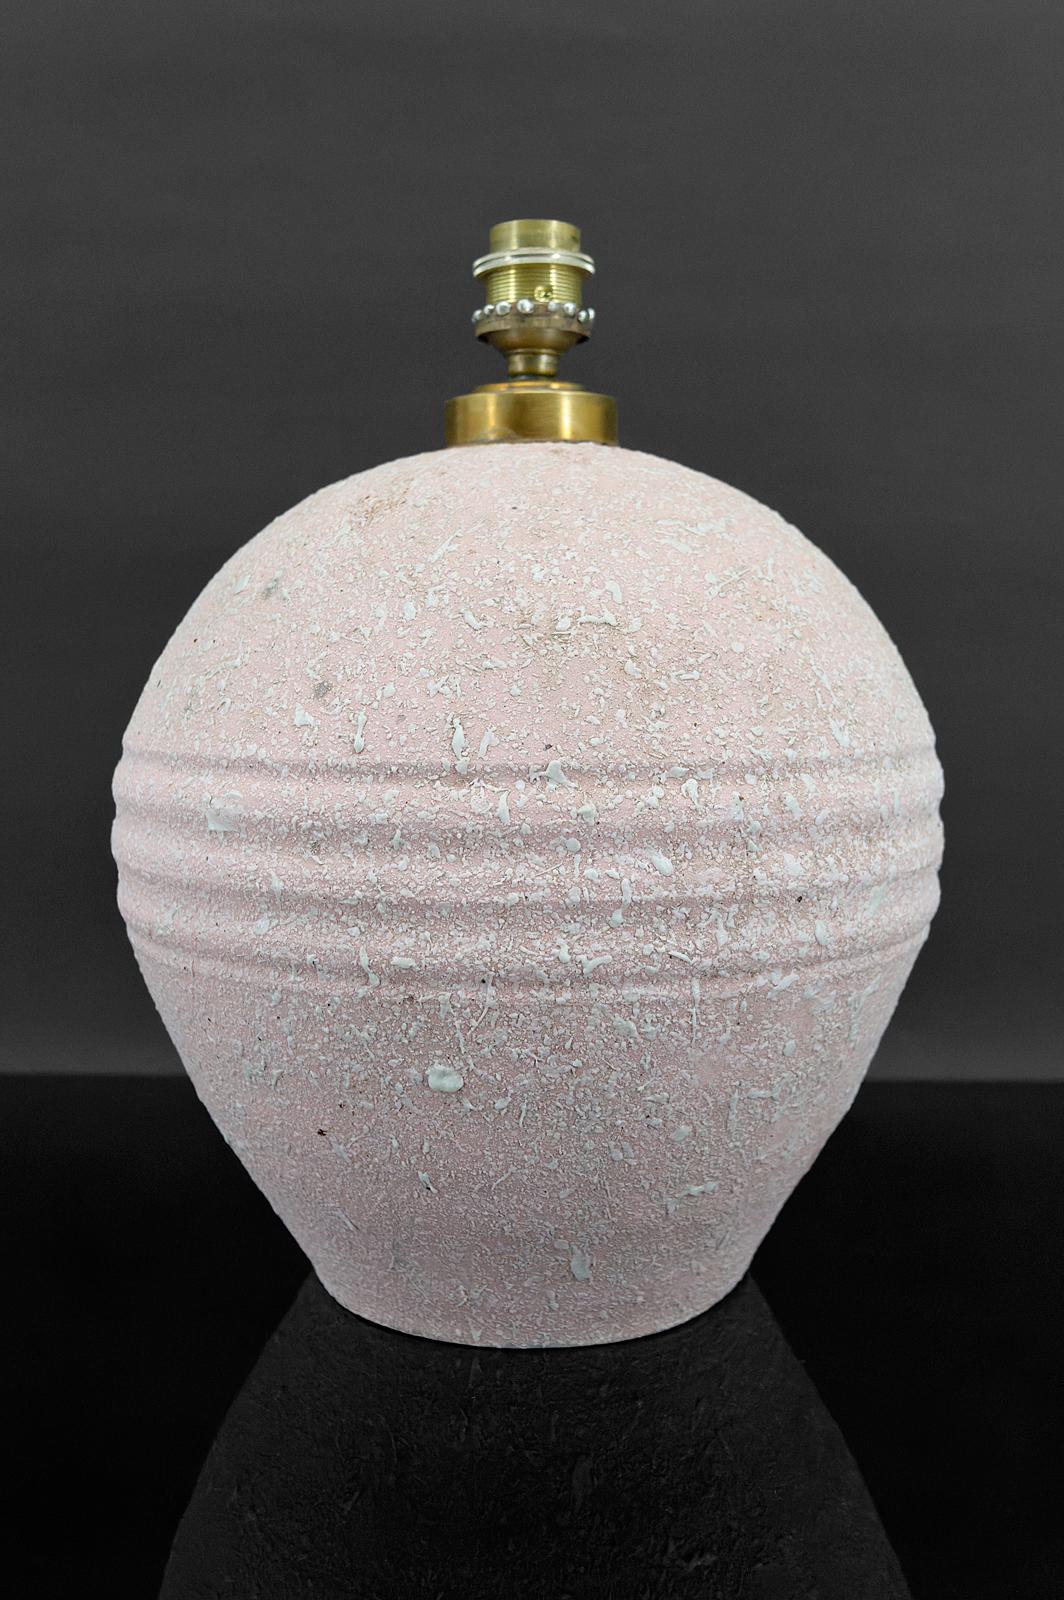 
Lampe en céramique avec émail blanc croustillant sur fond rose.
Dans le style de Jean Besnard
Art déco, France, vers 1925.

En bon état. Électricité OK.

Dimensions :
Hauteur 21 cm
Diamètre 24 cm